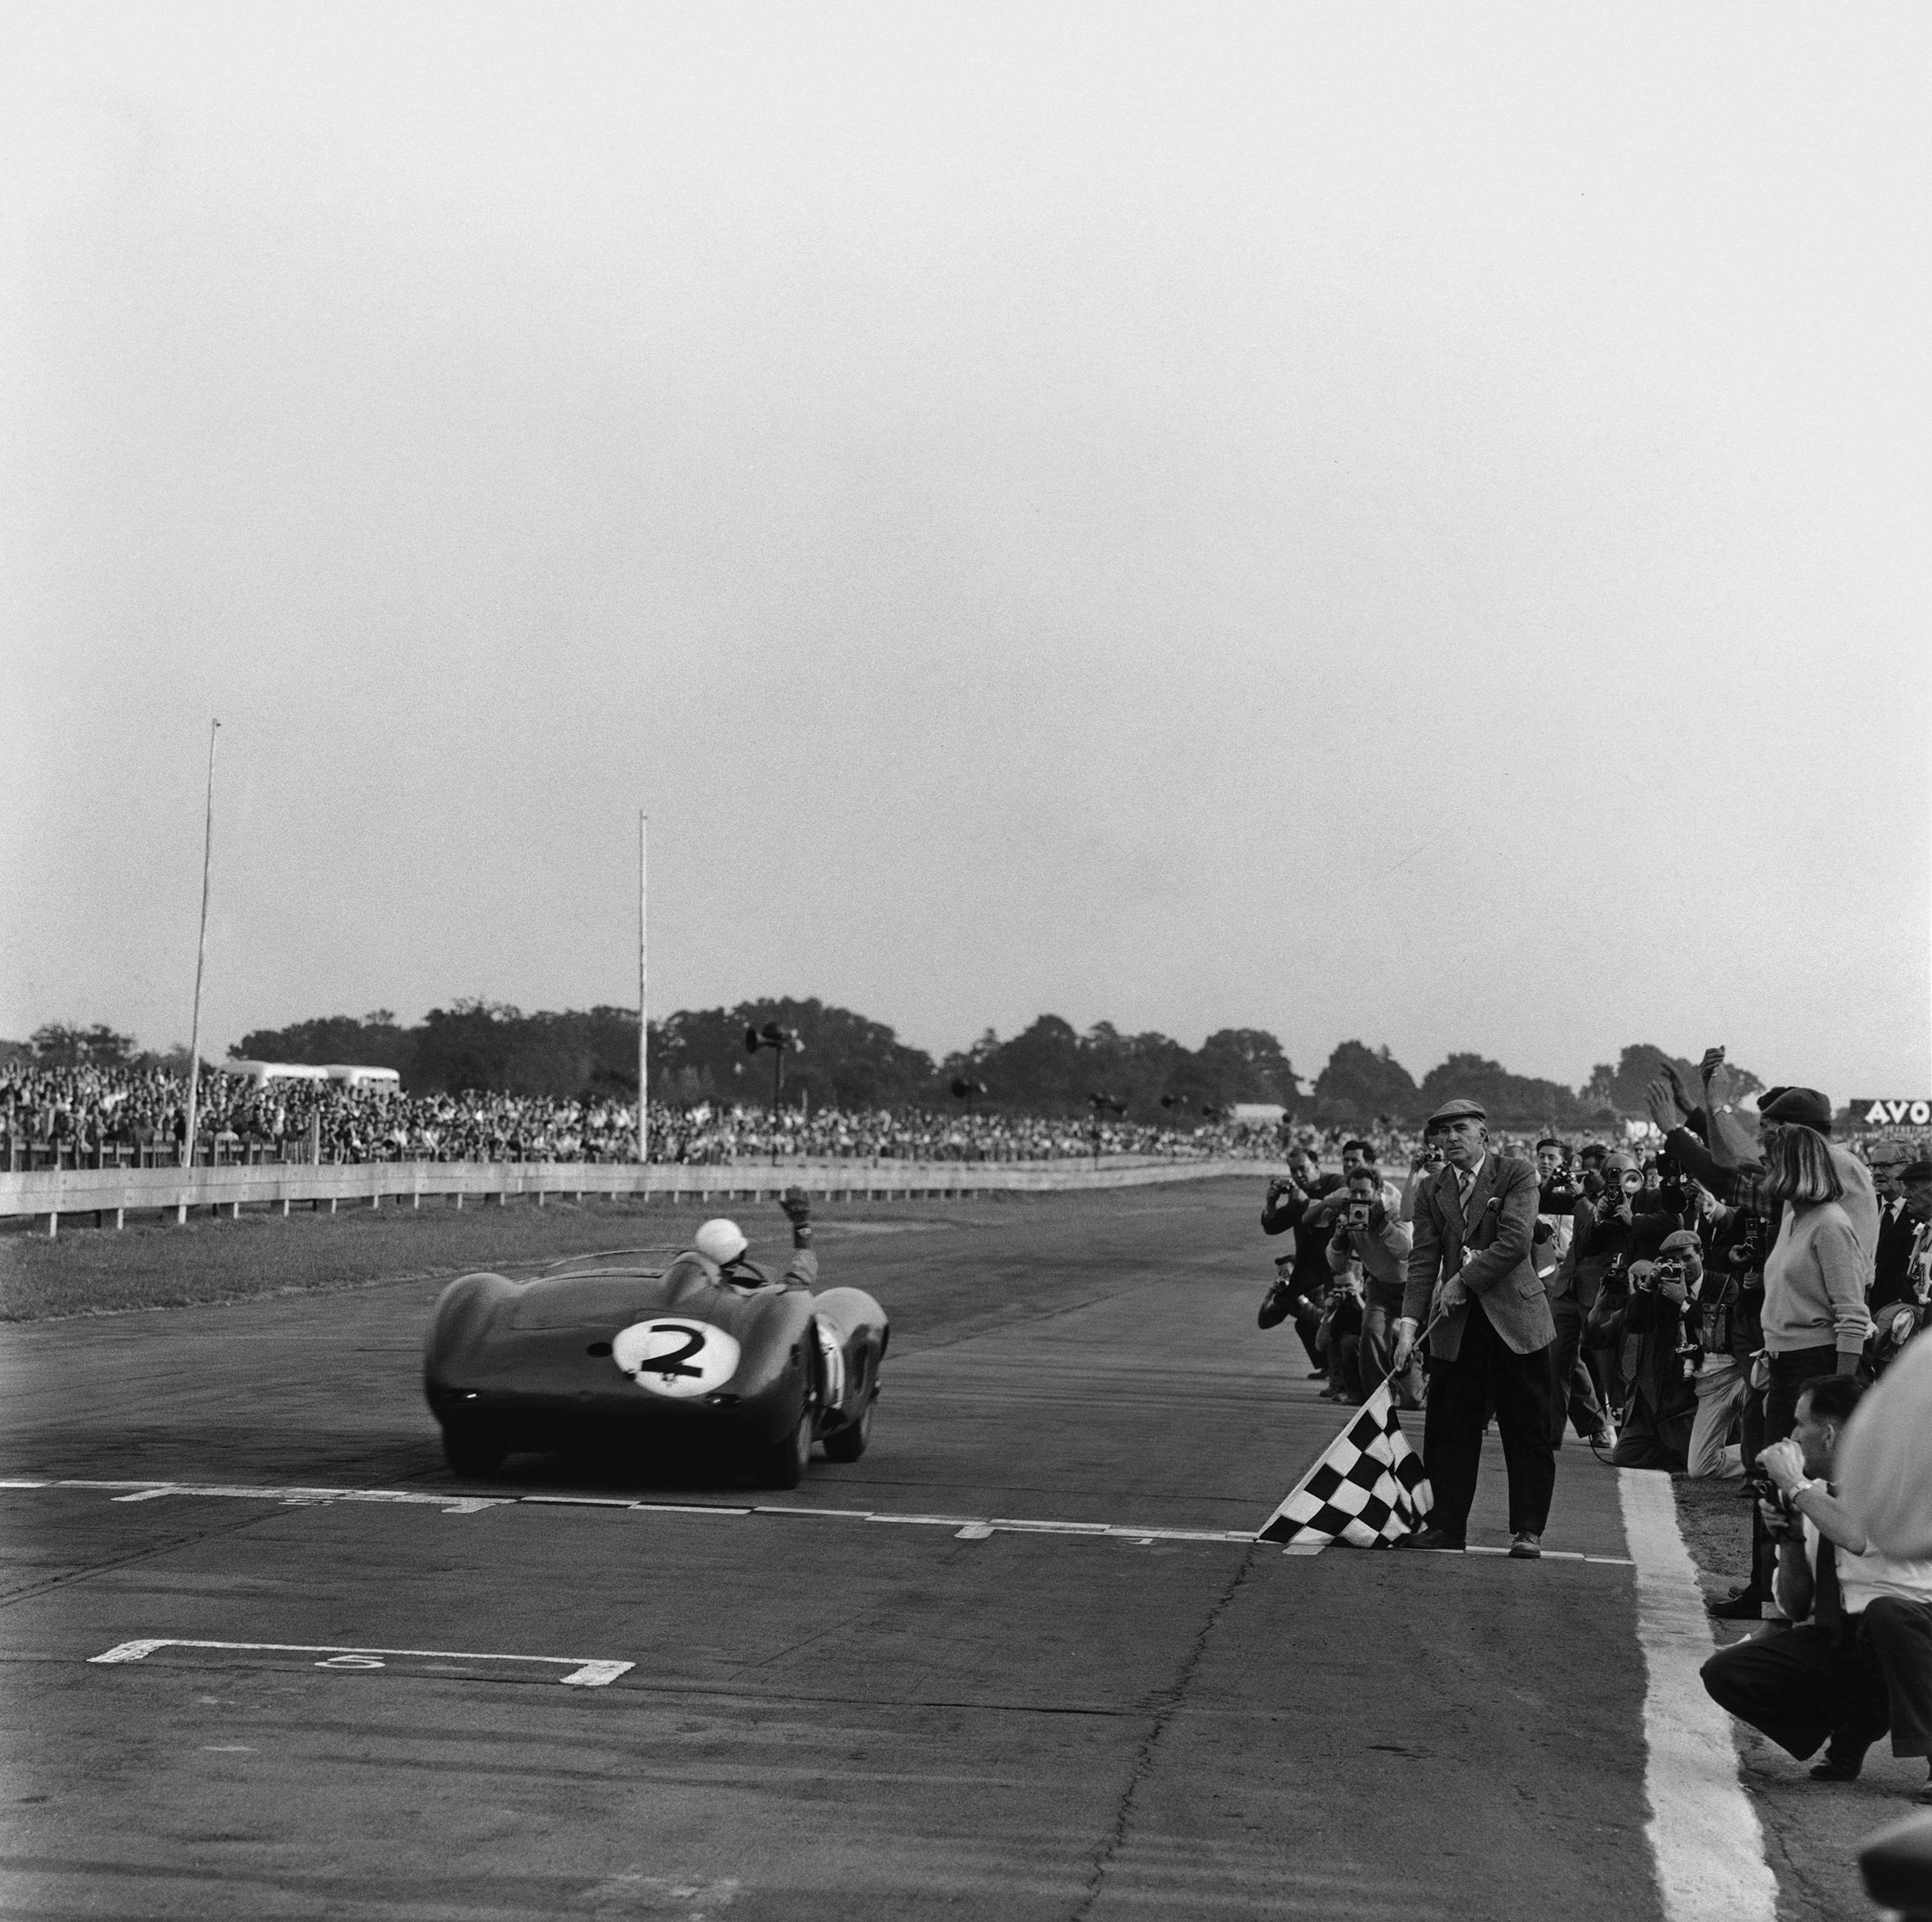 revival-2019-stirling-moss-win-goodwood-1959-motorsport-images-goodwood-04092019.jpg